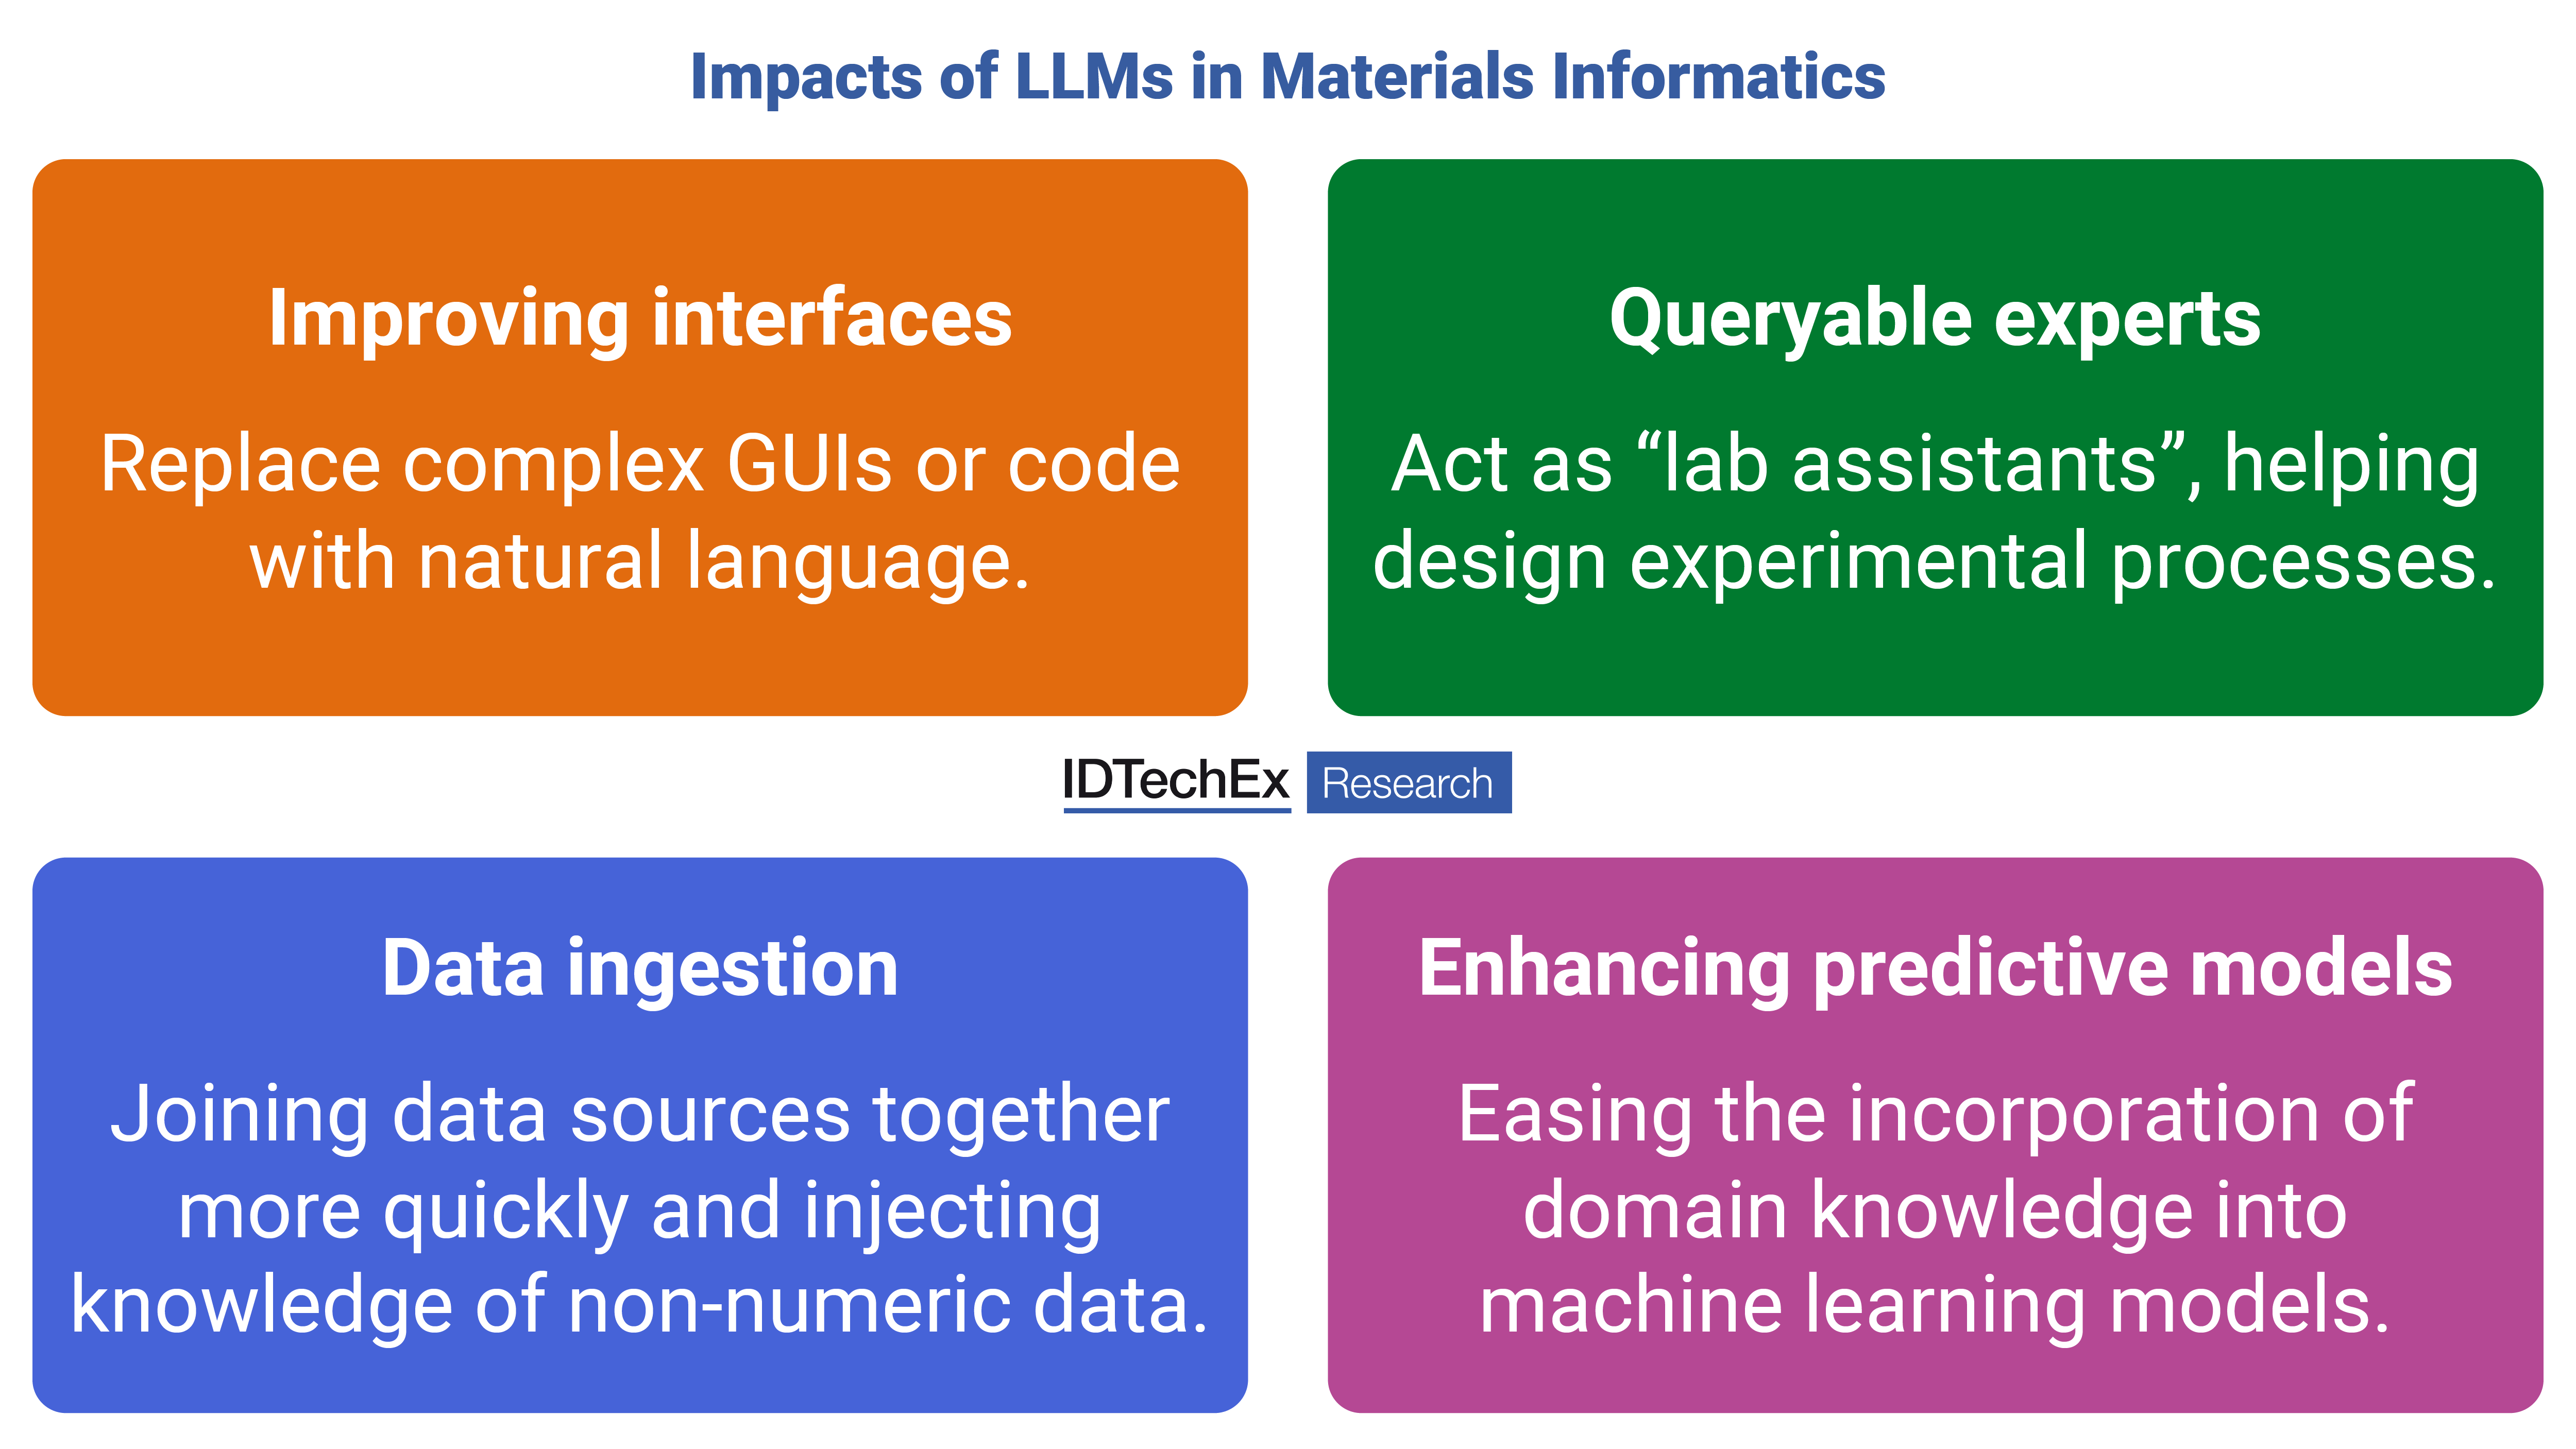 Potenzielle Auswirkungen von LLMs in Materialinformatik. Quelle: IDTechEx